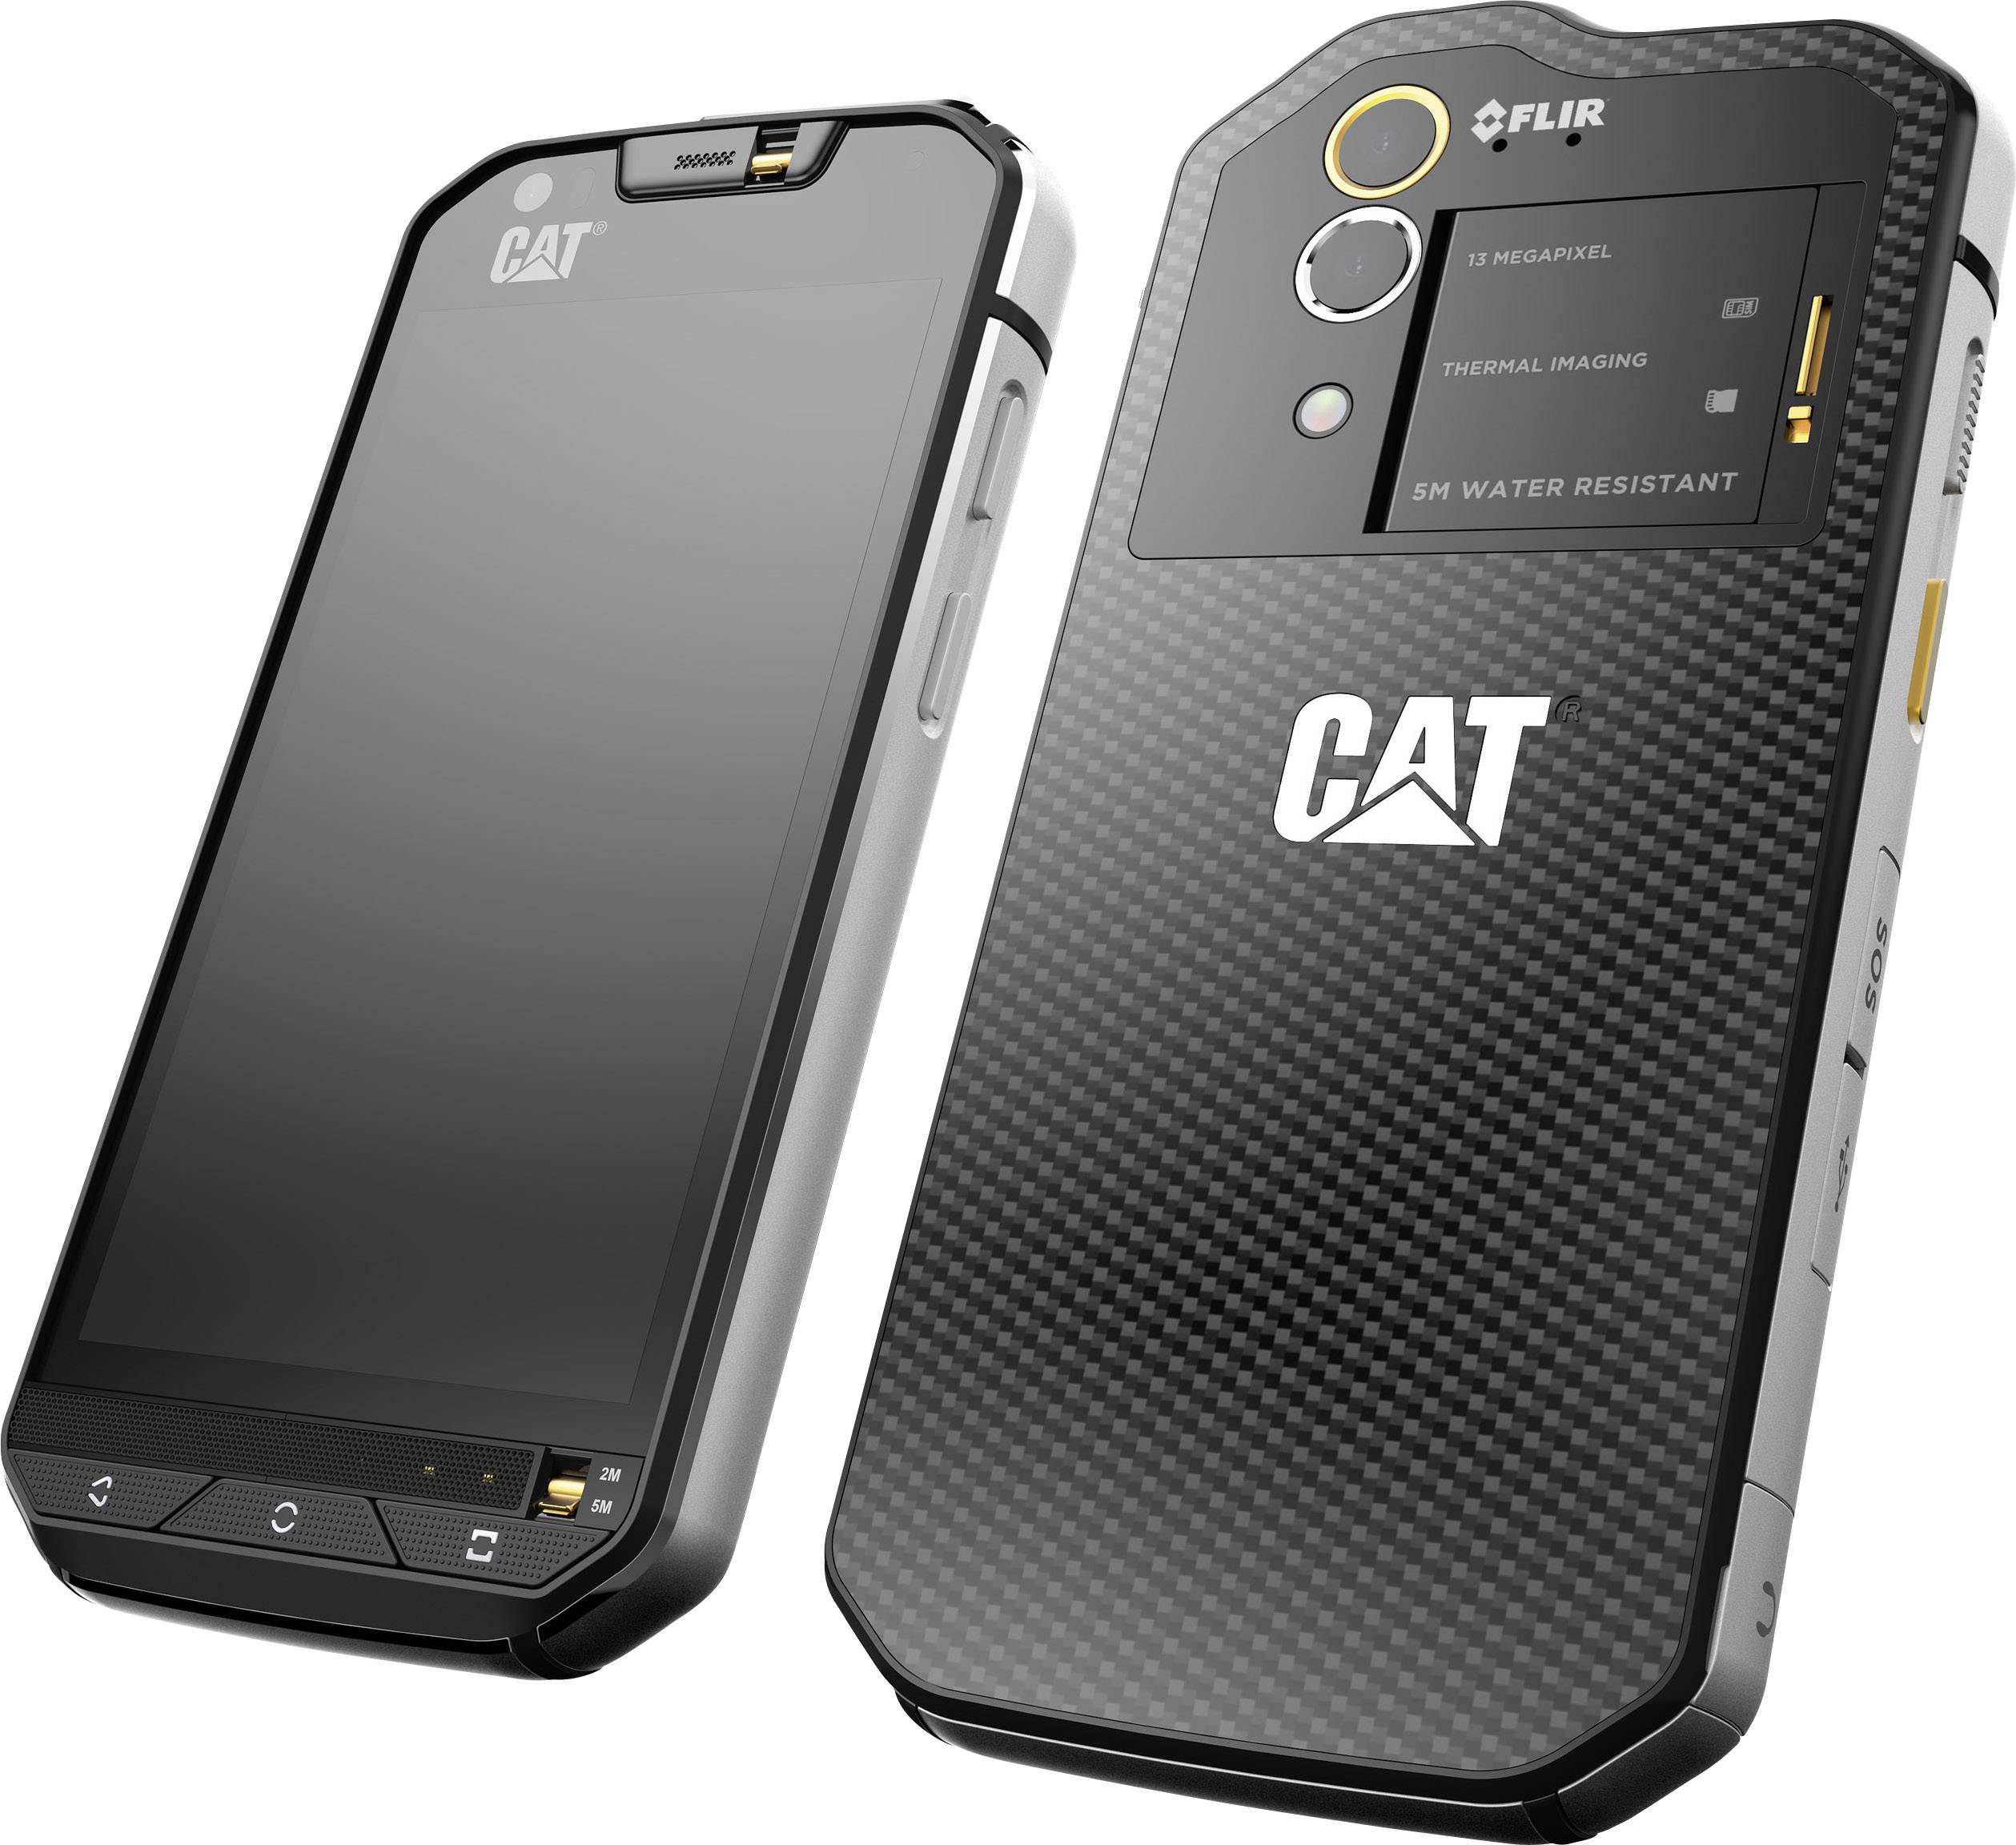 Cats60outdoor Smartphone With Flir Infrared Camera Conrad Com